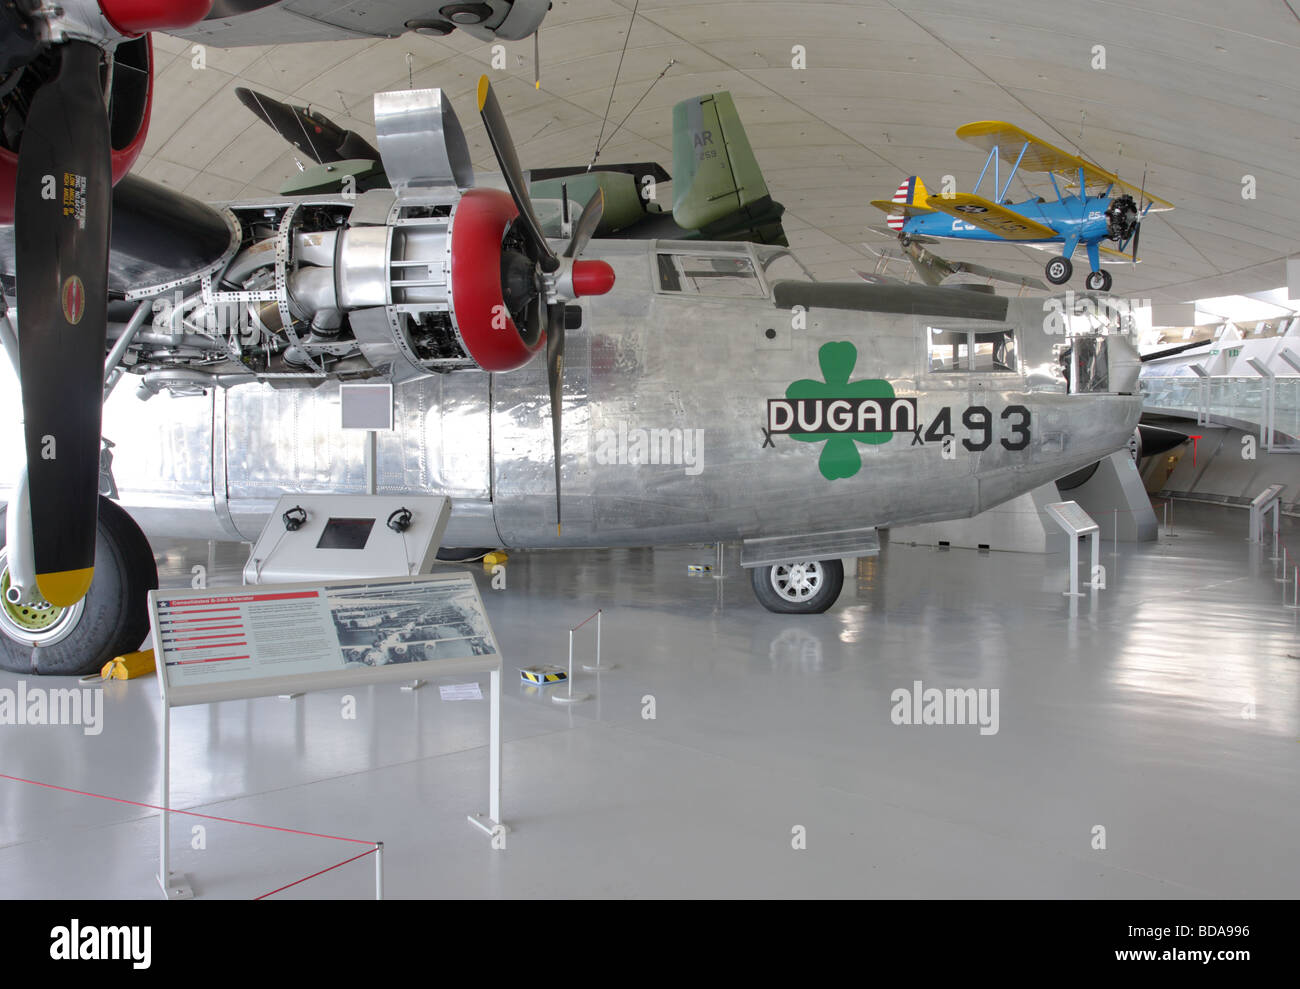 Visualizzate in La cavernosa american Air Museum Duxford, Inghilterra,sorge questo raffinato esempio del consolidato B-24 Liberator bomb Foto Stock